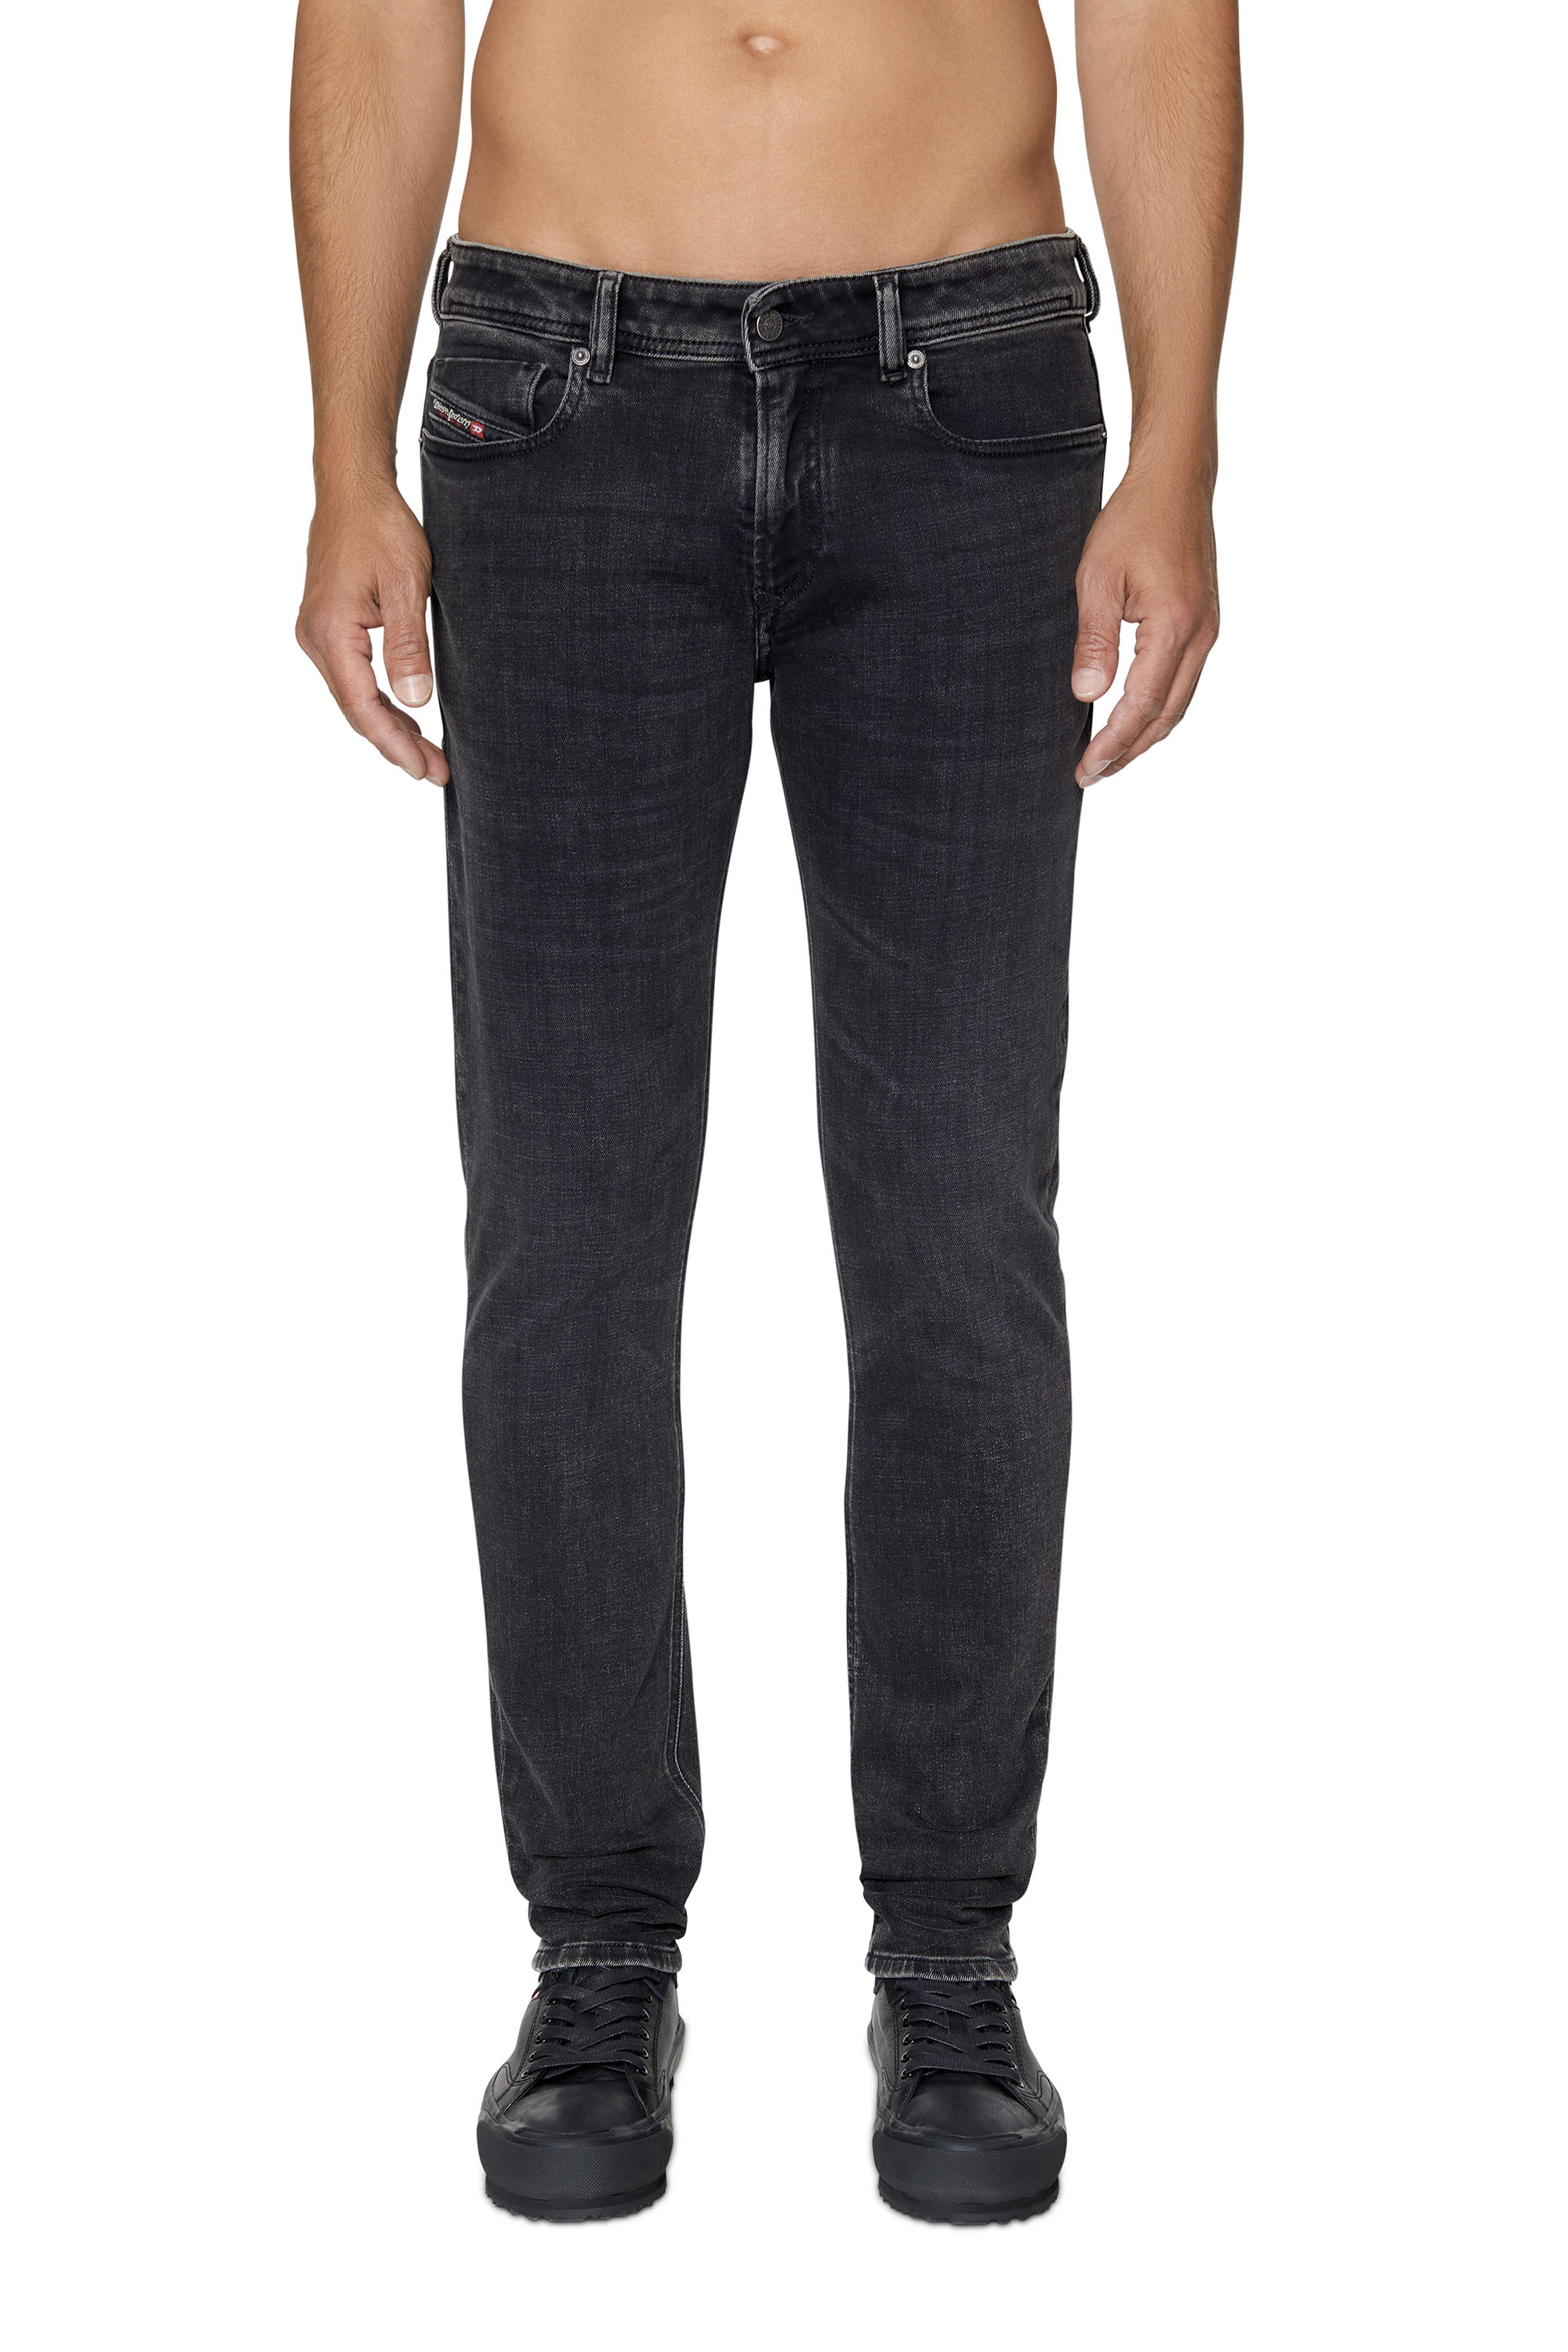 D-fining jeans with logo Jean DIESEL pour homme en coloris Noir 22 % de réduction Homme Vêtements Jeans Jeans coupe droite 